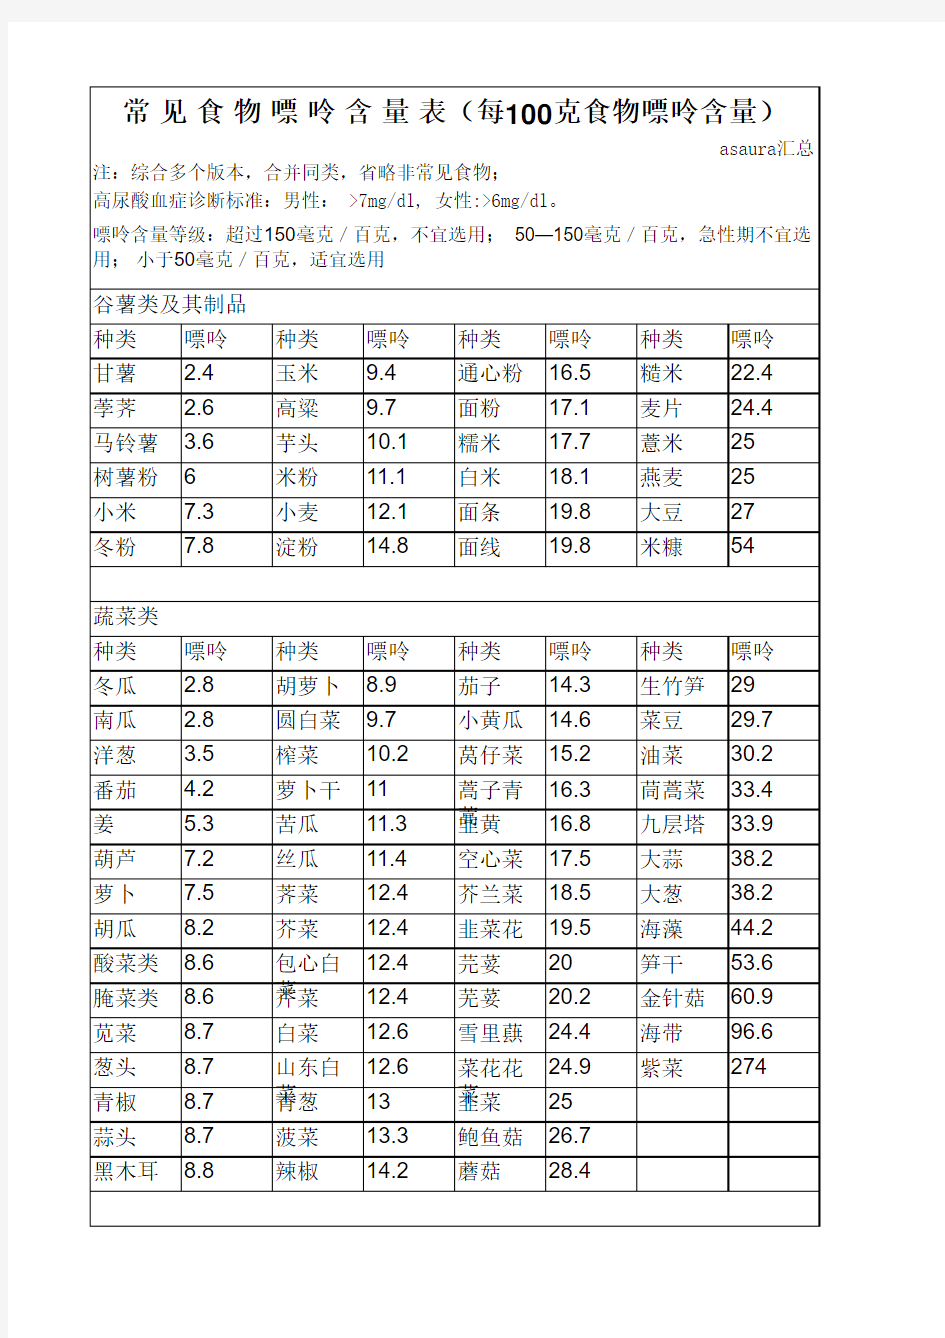 最全食品嘌呤含量表(2013最全,分类排序,可直接打印)